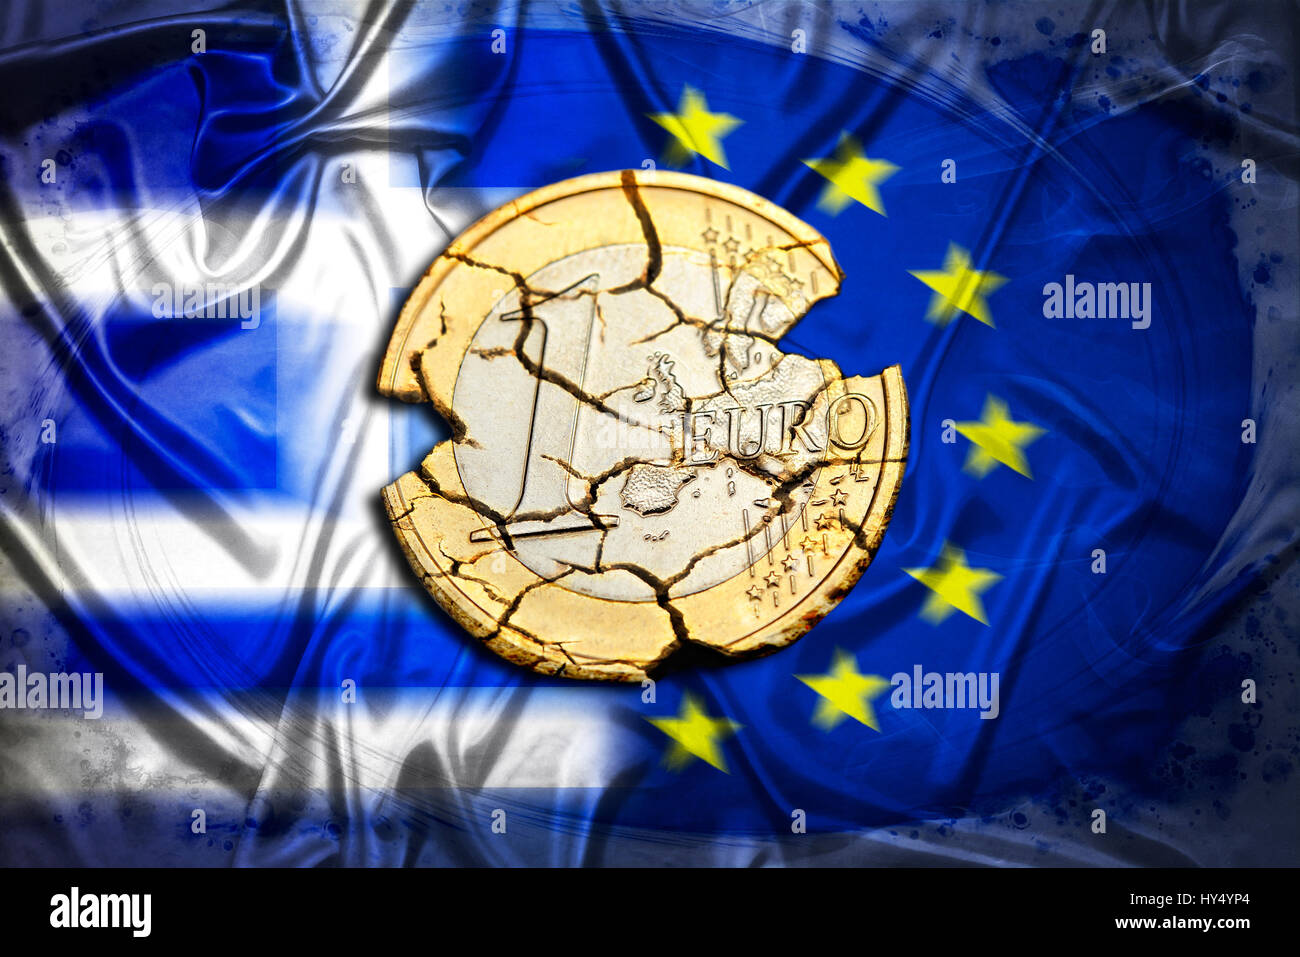 Rovinato eurocoin prima di Grecia e bandiera UE, simbolico Grexit foto, Zerfallene Euromuenze vor Griechenland- und UE-Fahne, Symbolfoto Grexit Foto Stock